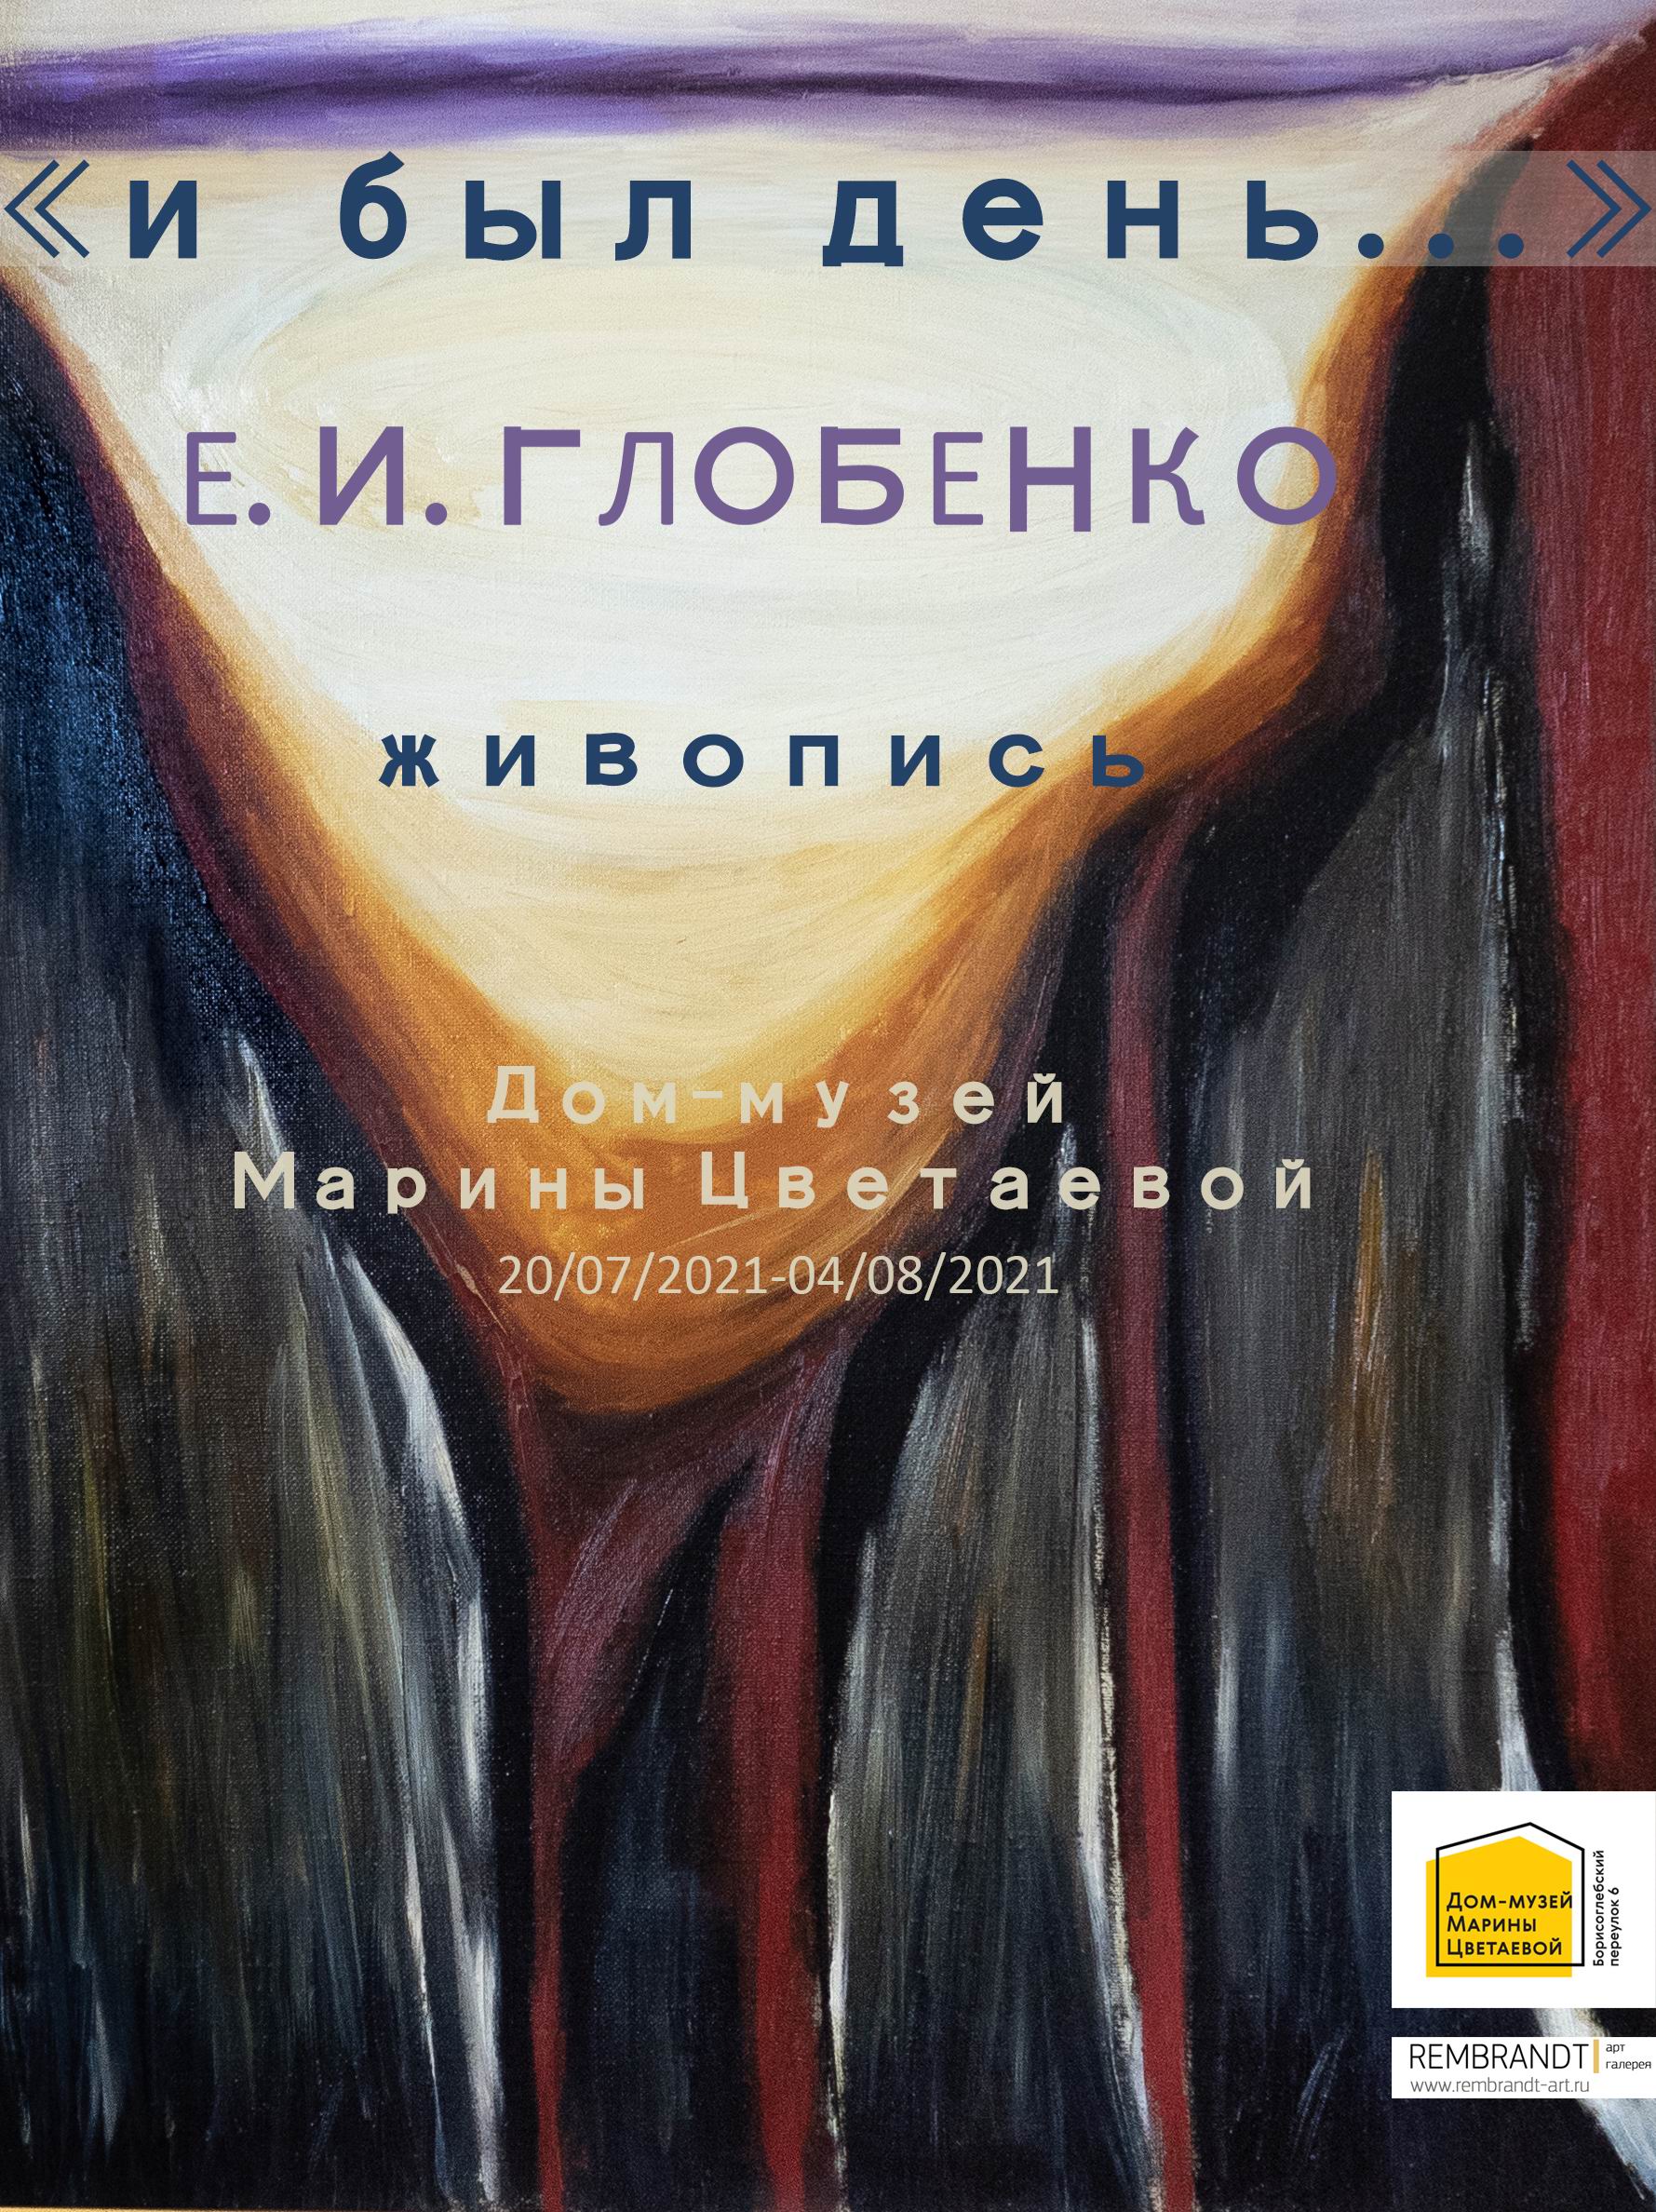 Иллюстрация: Открытие выставки Евгения Глобенко «И был день…»